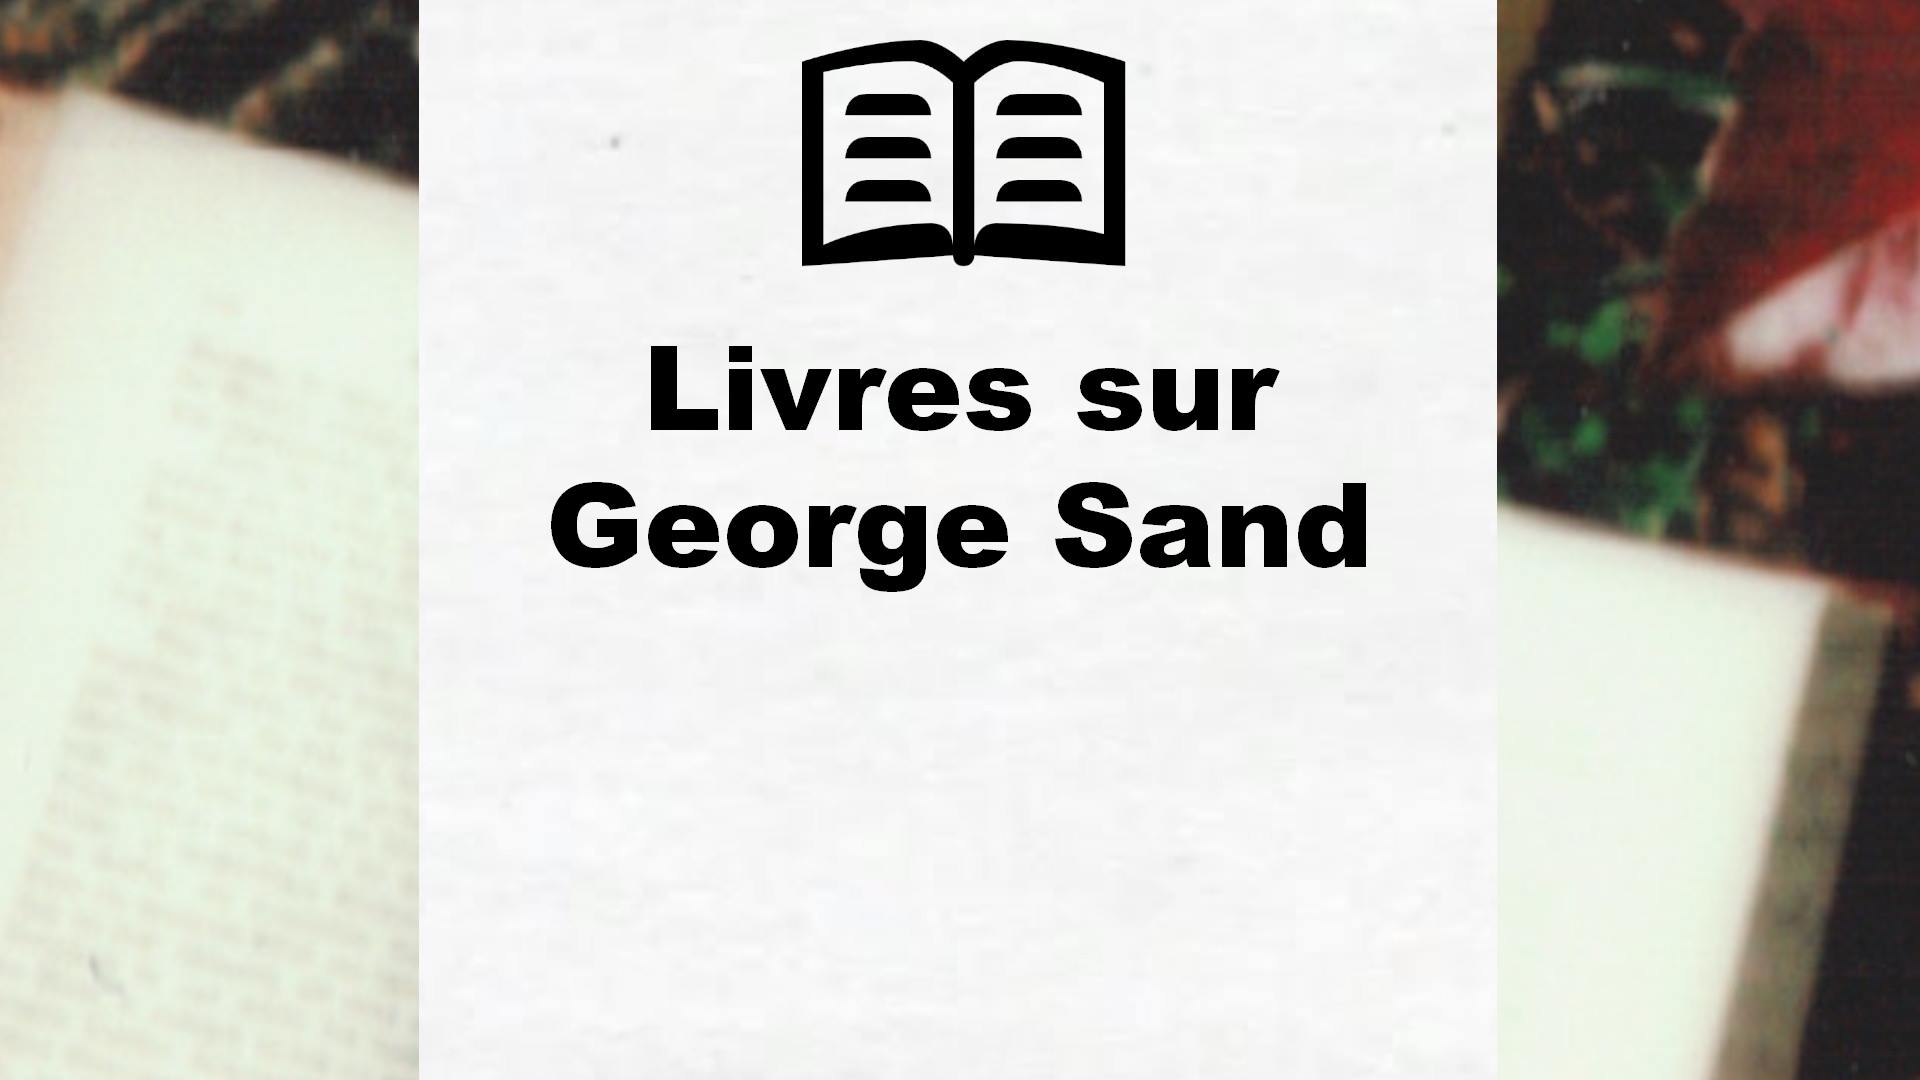 Livres sur George Sand